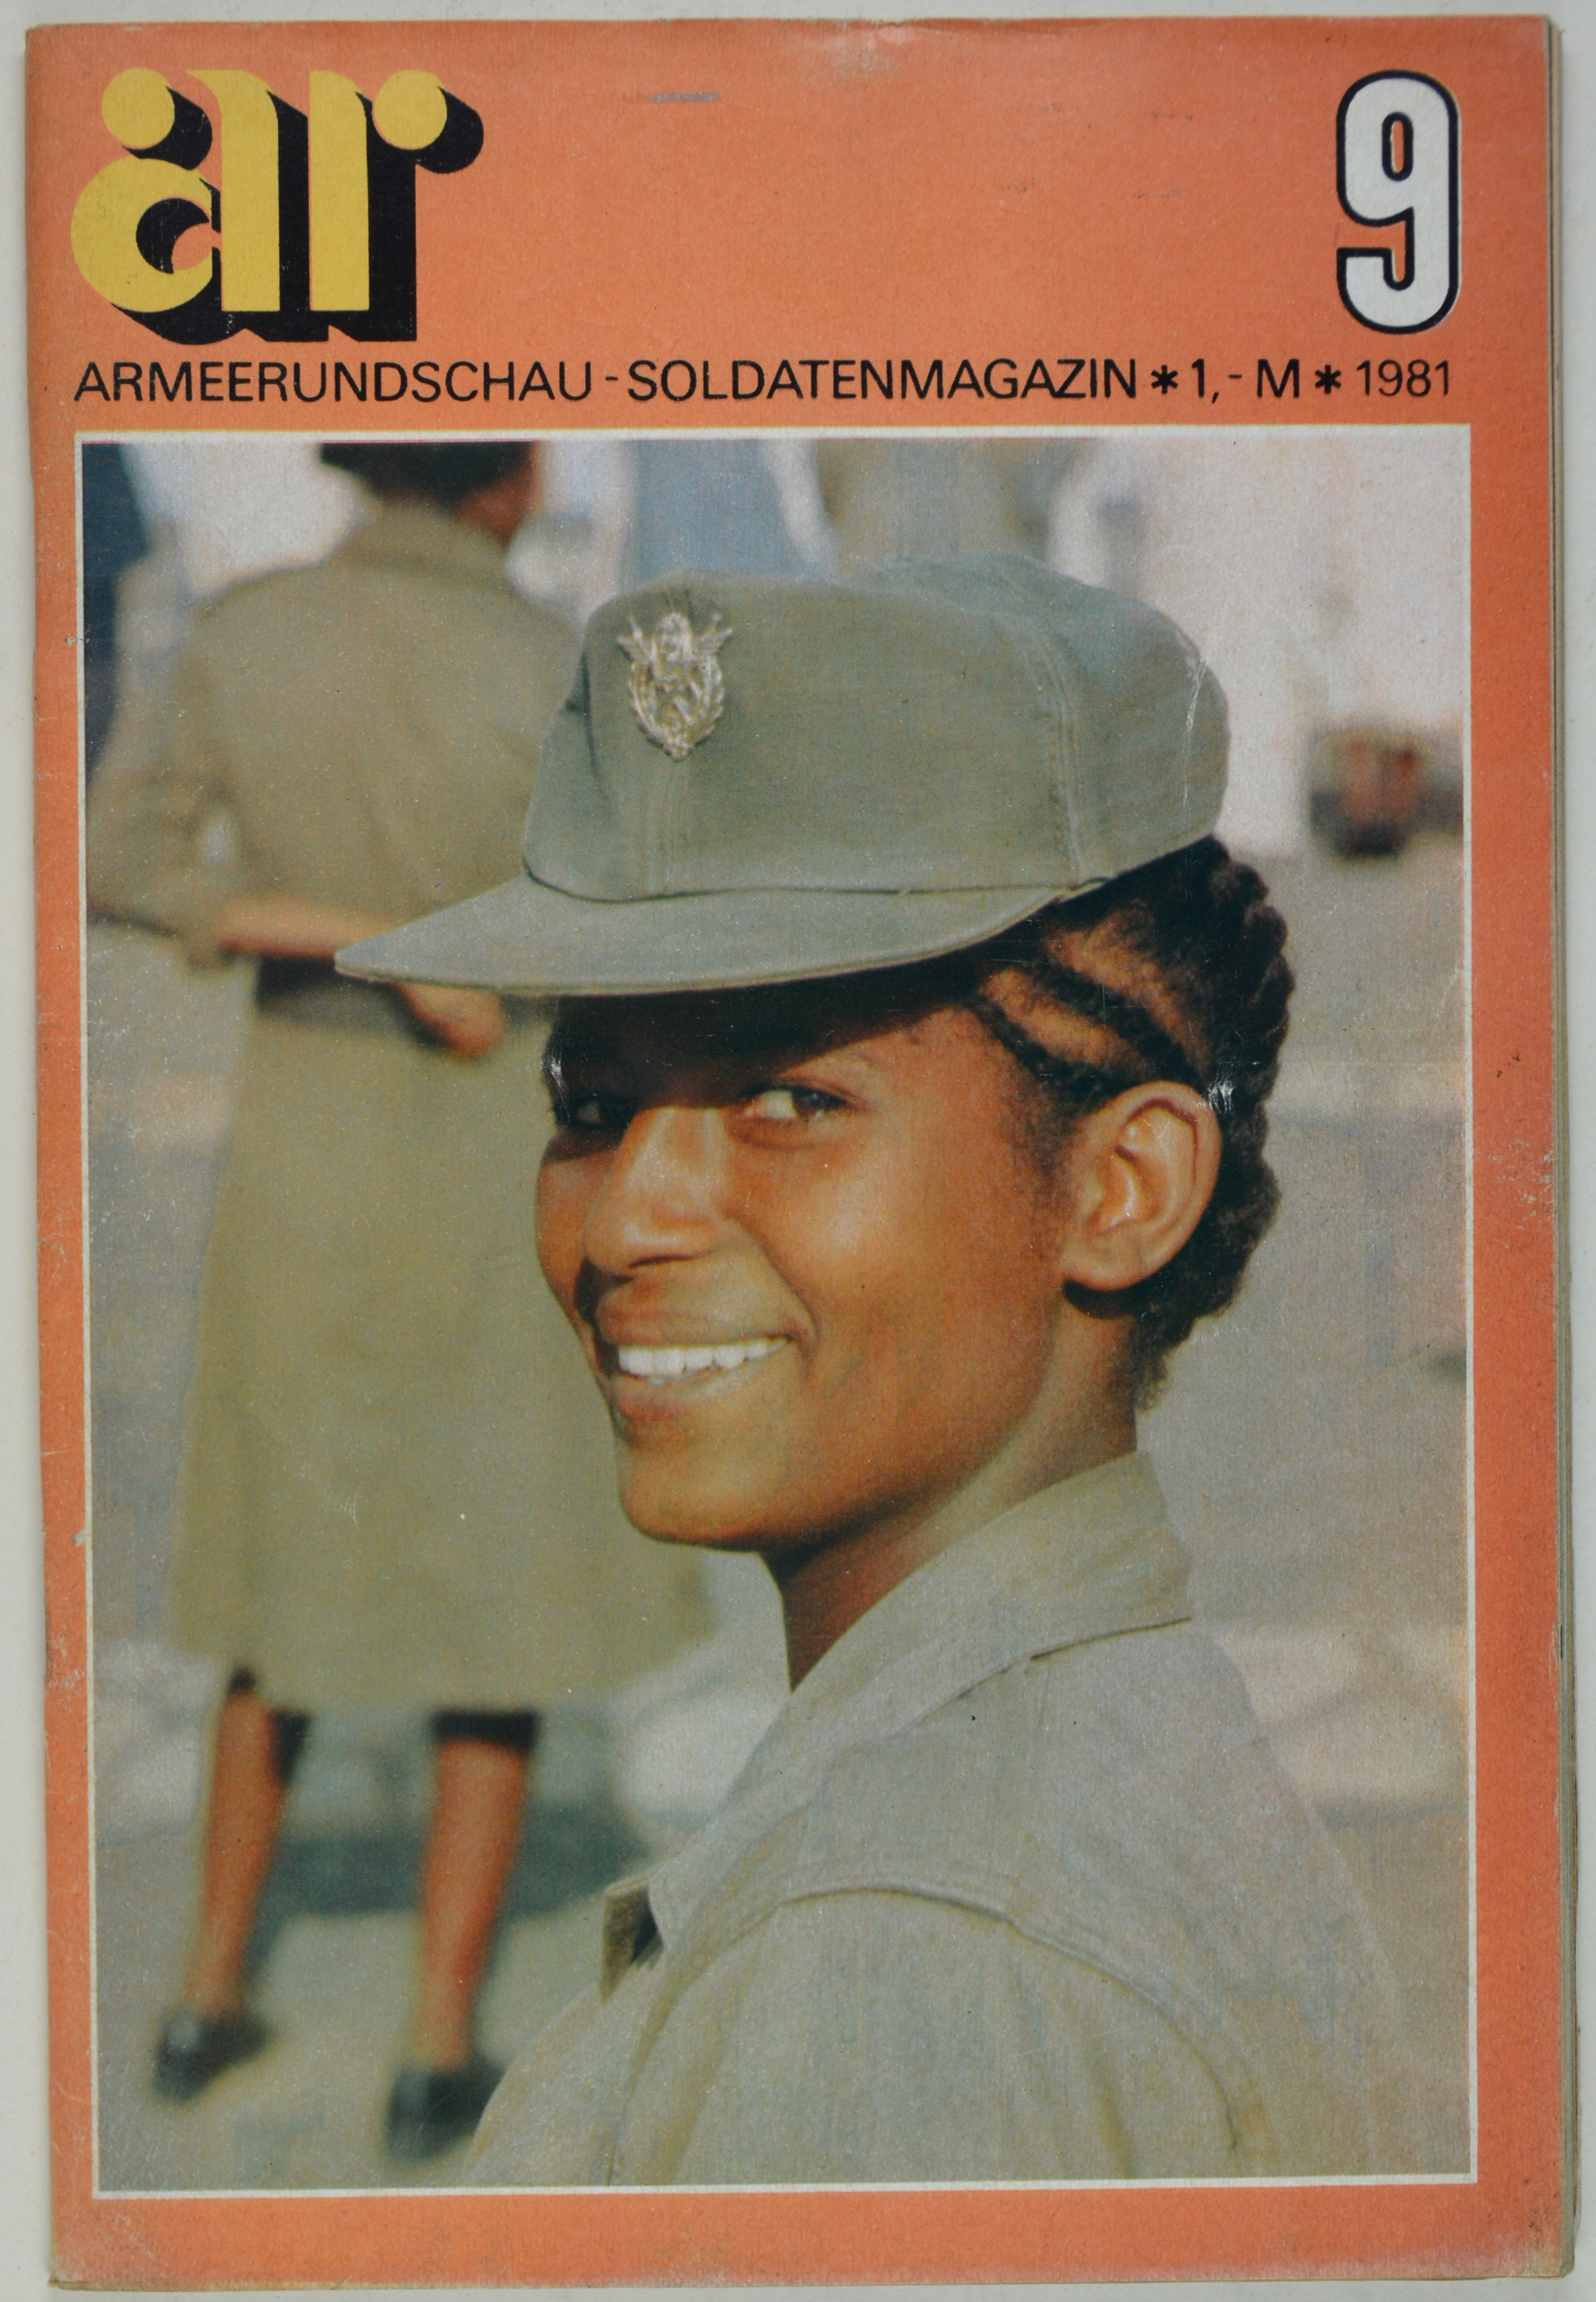 Armeerundschau - Soldatenmagazin (1981), Heft 9 (DDR Geschichtsmuseum im Dokumentationszentrum Perleberg CC BY-SA)